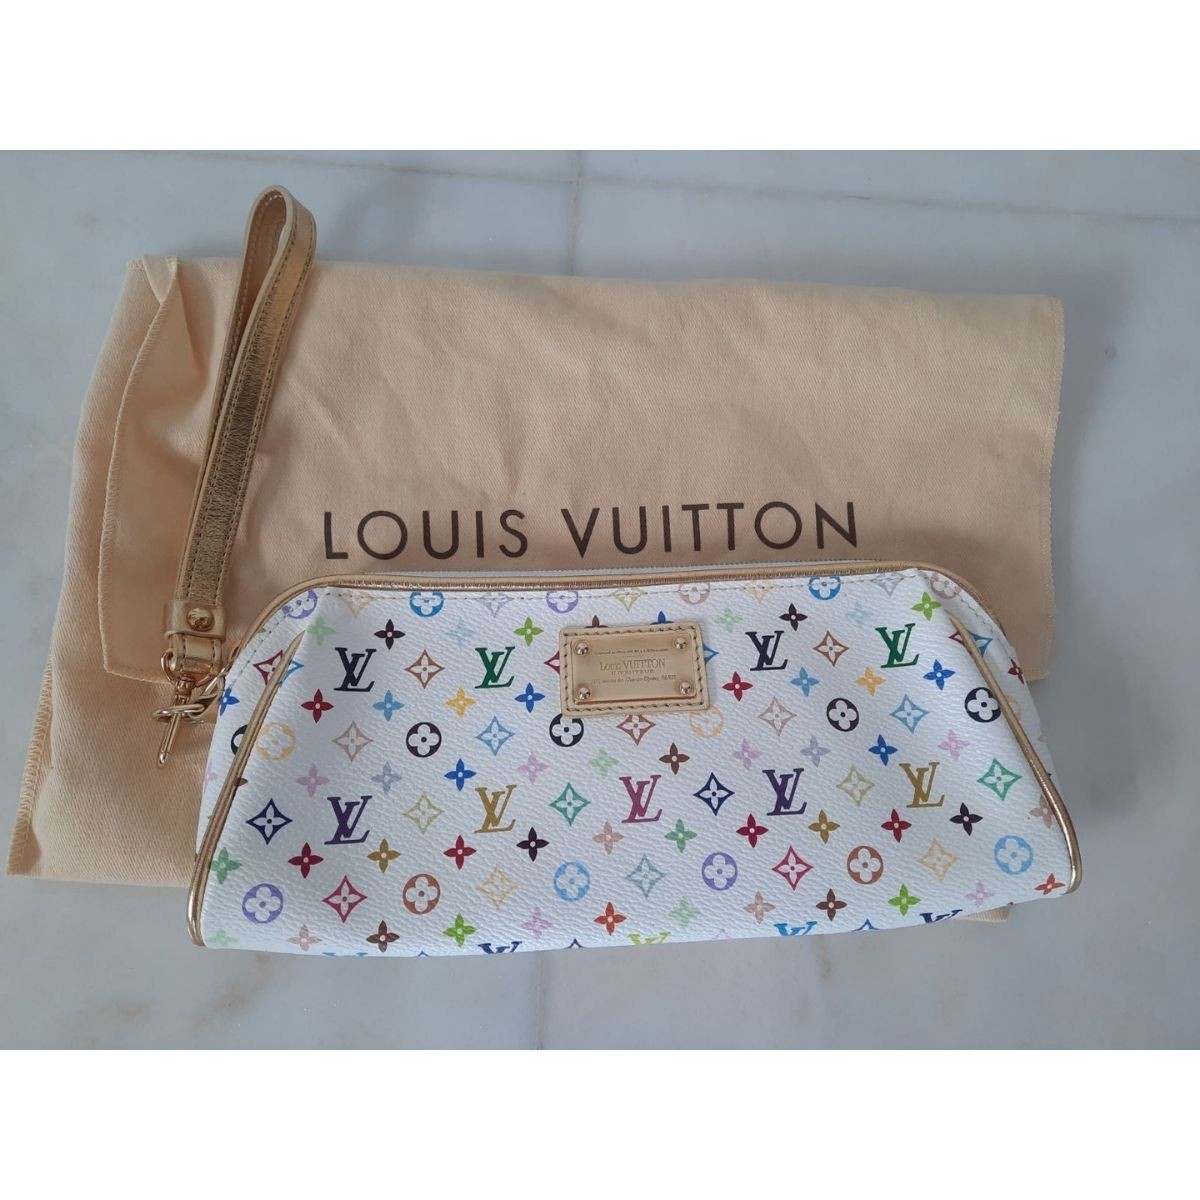 Louis Vuitton multicolor Kate clutch